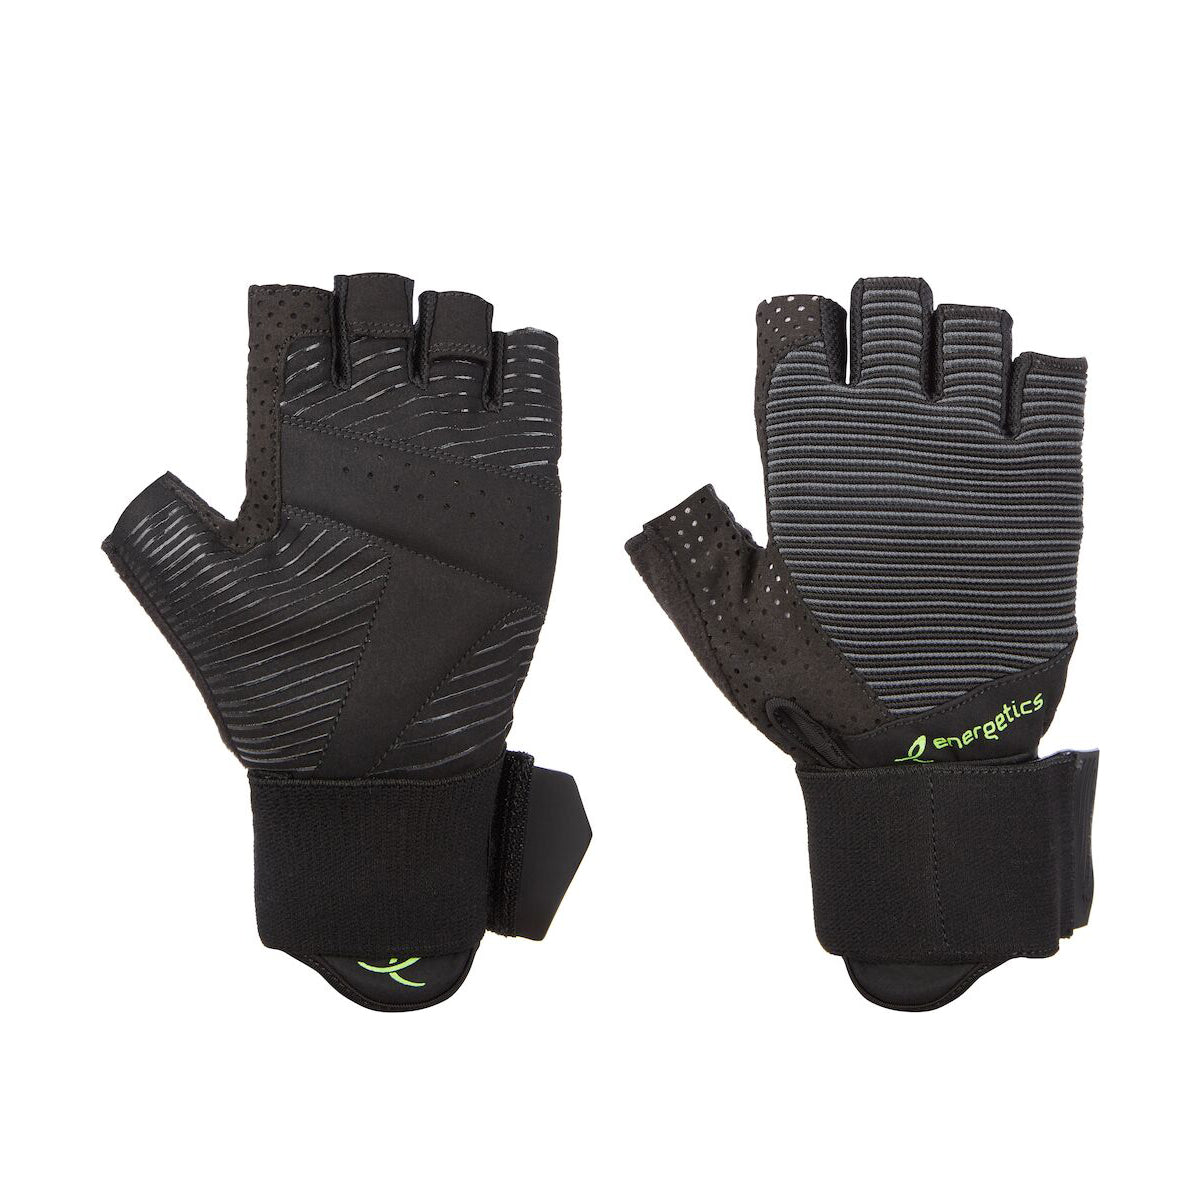 Mfg550 Fitness Gloves